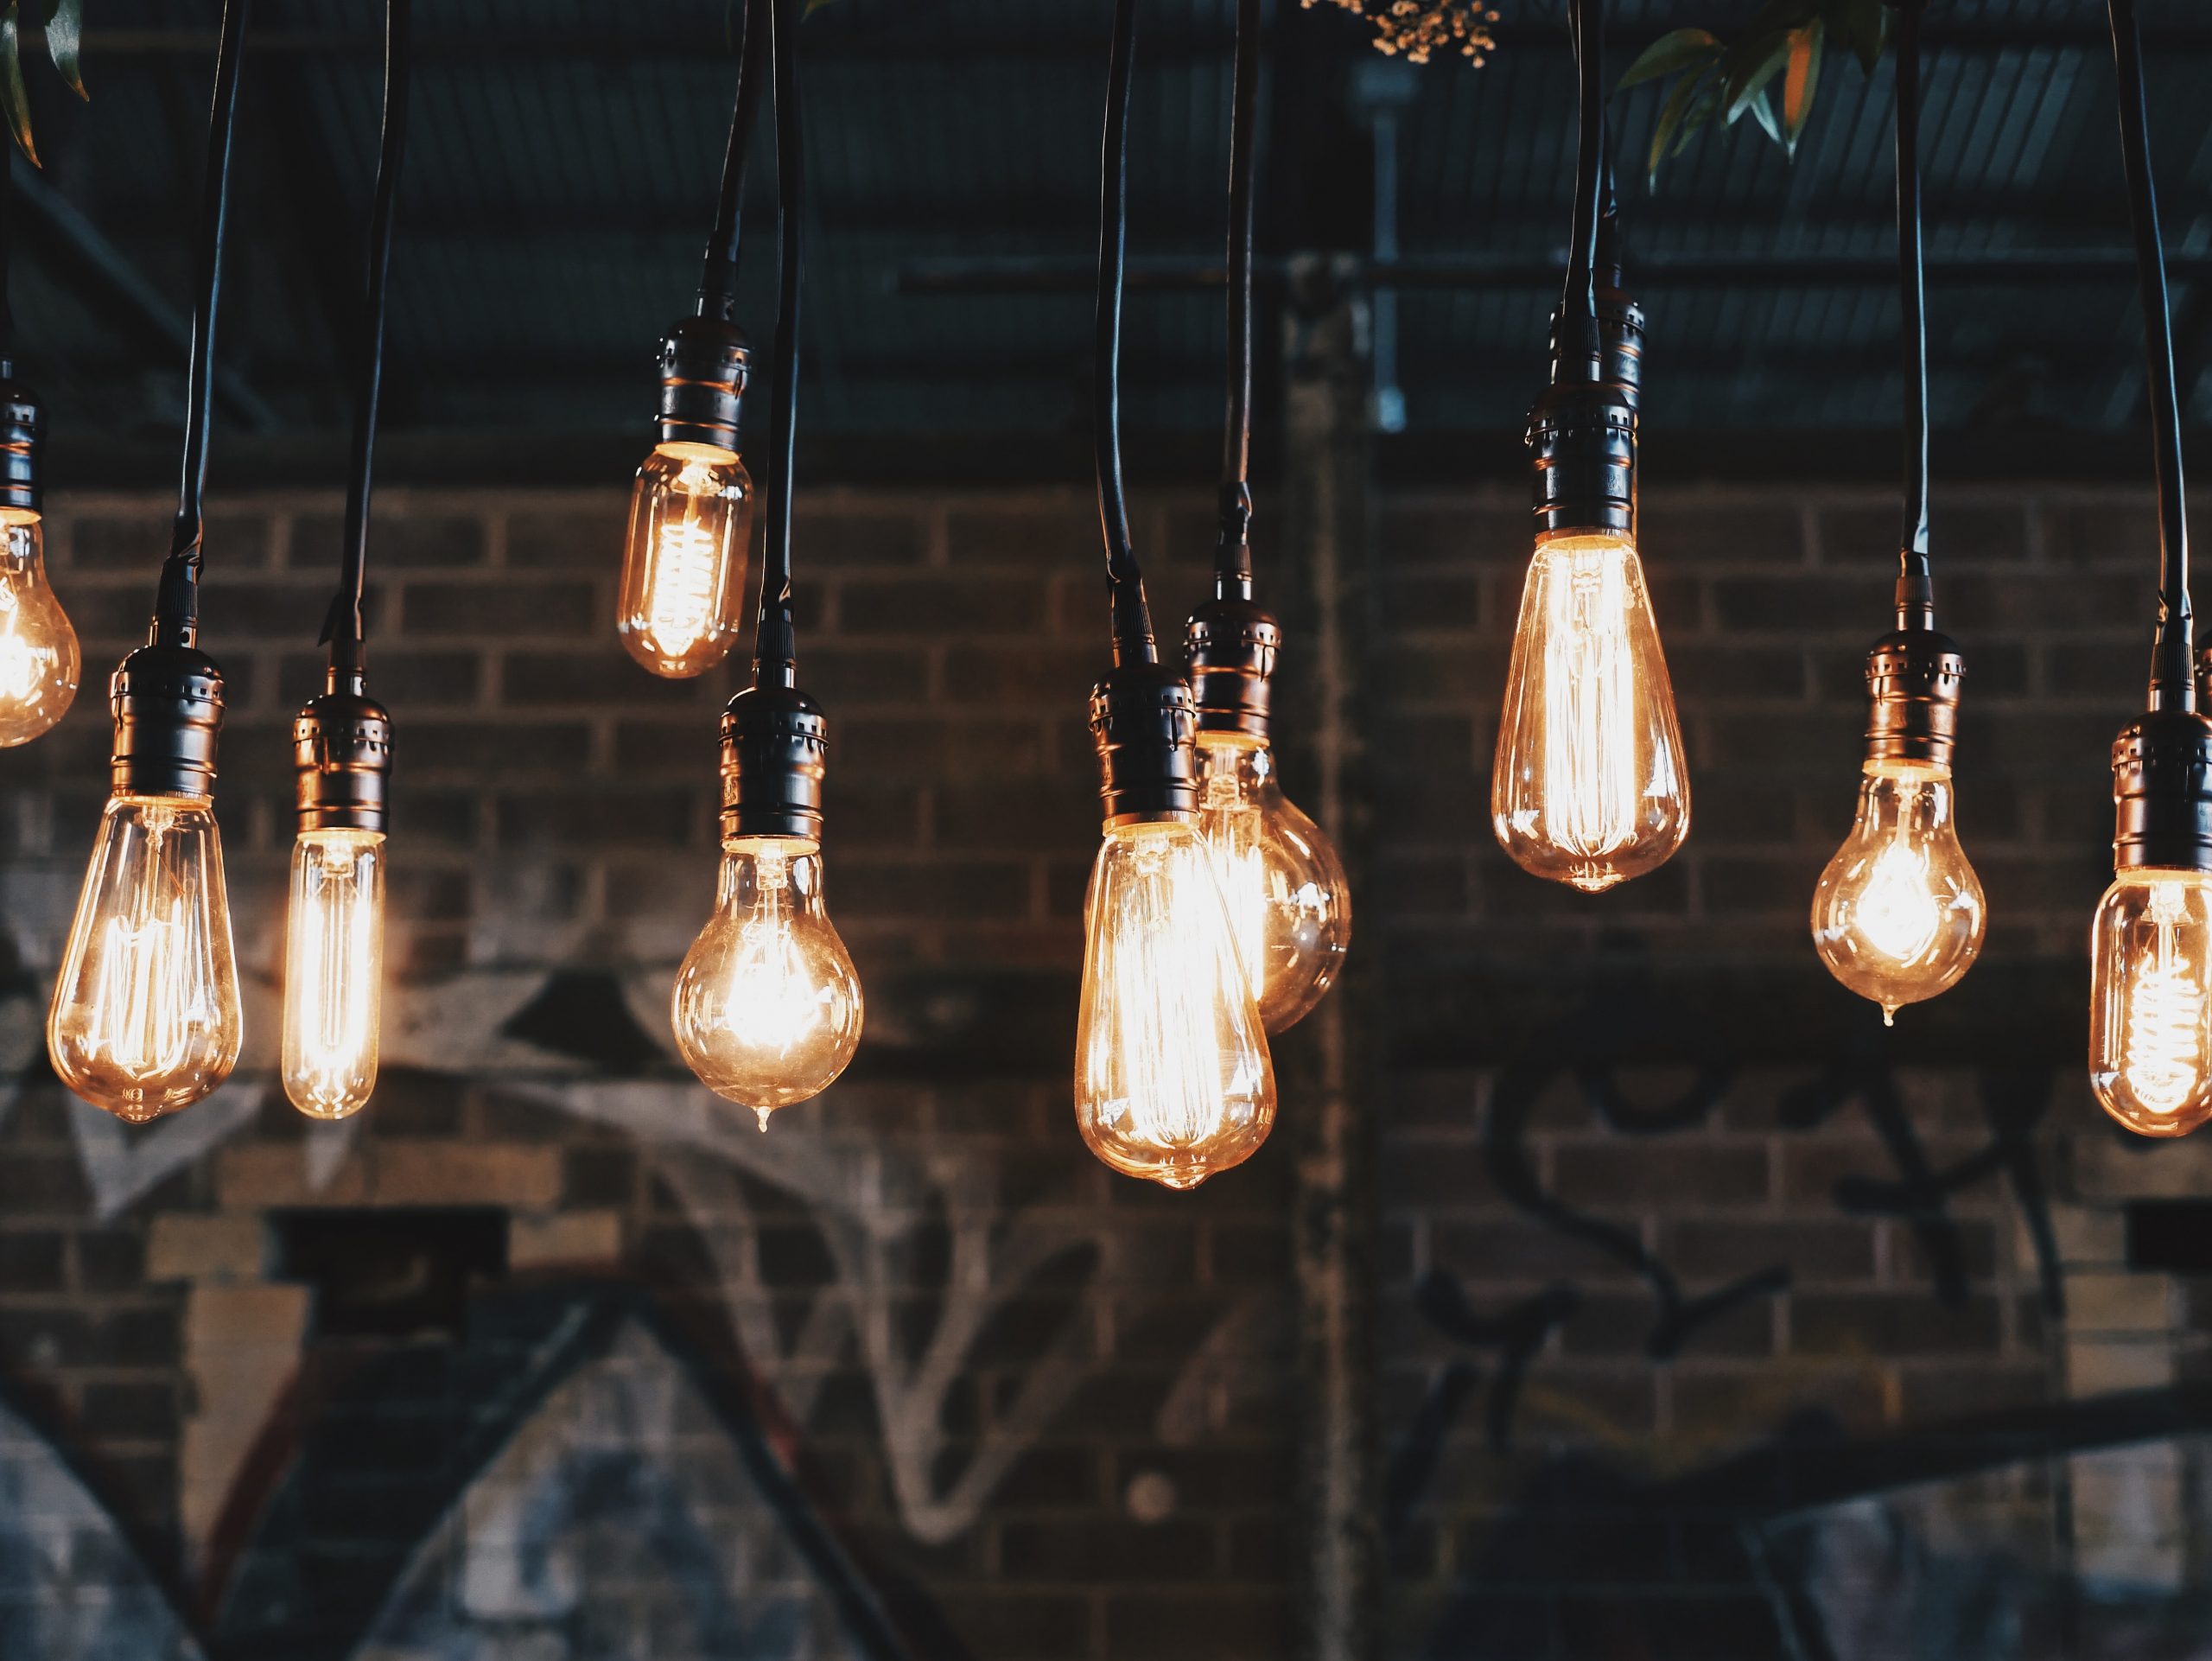 10 lightbulbs illustrating 10 bright ideas